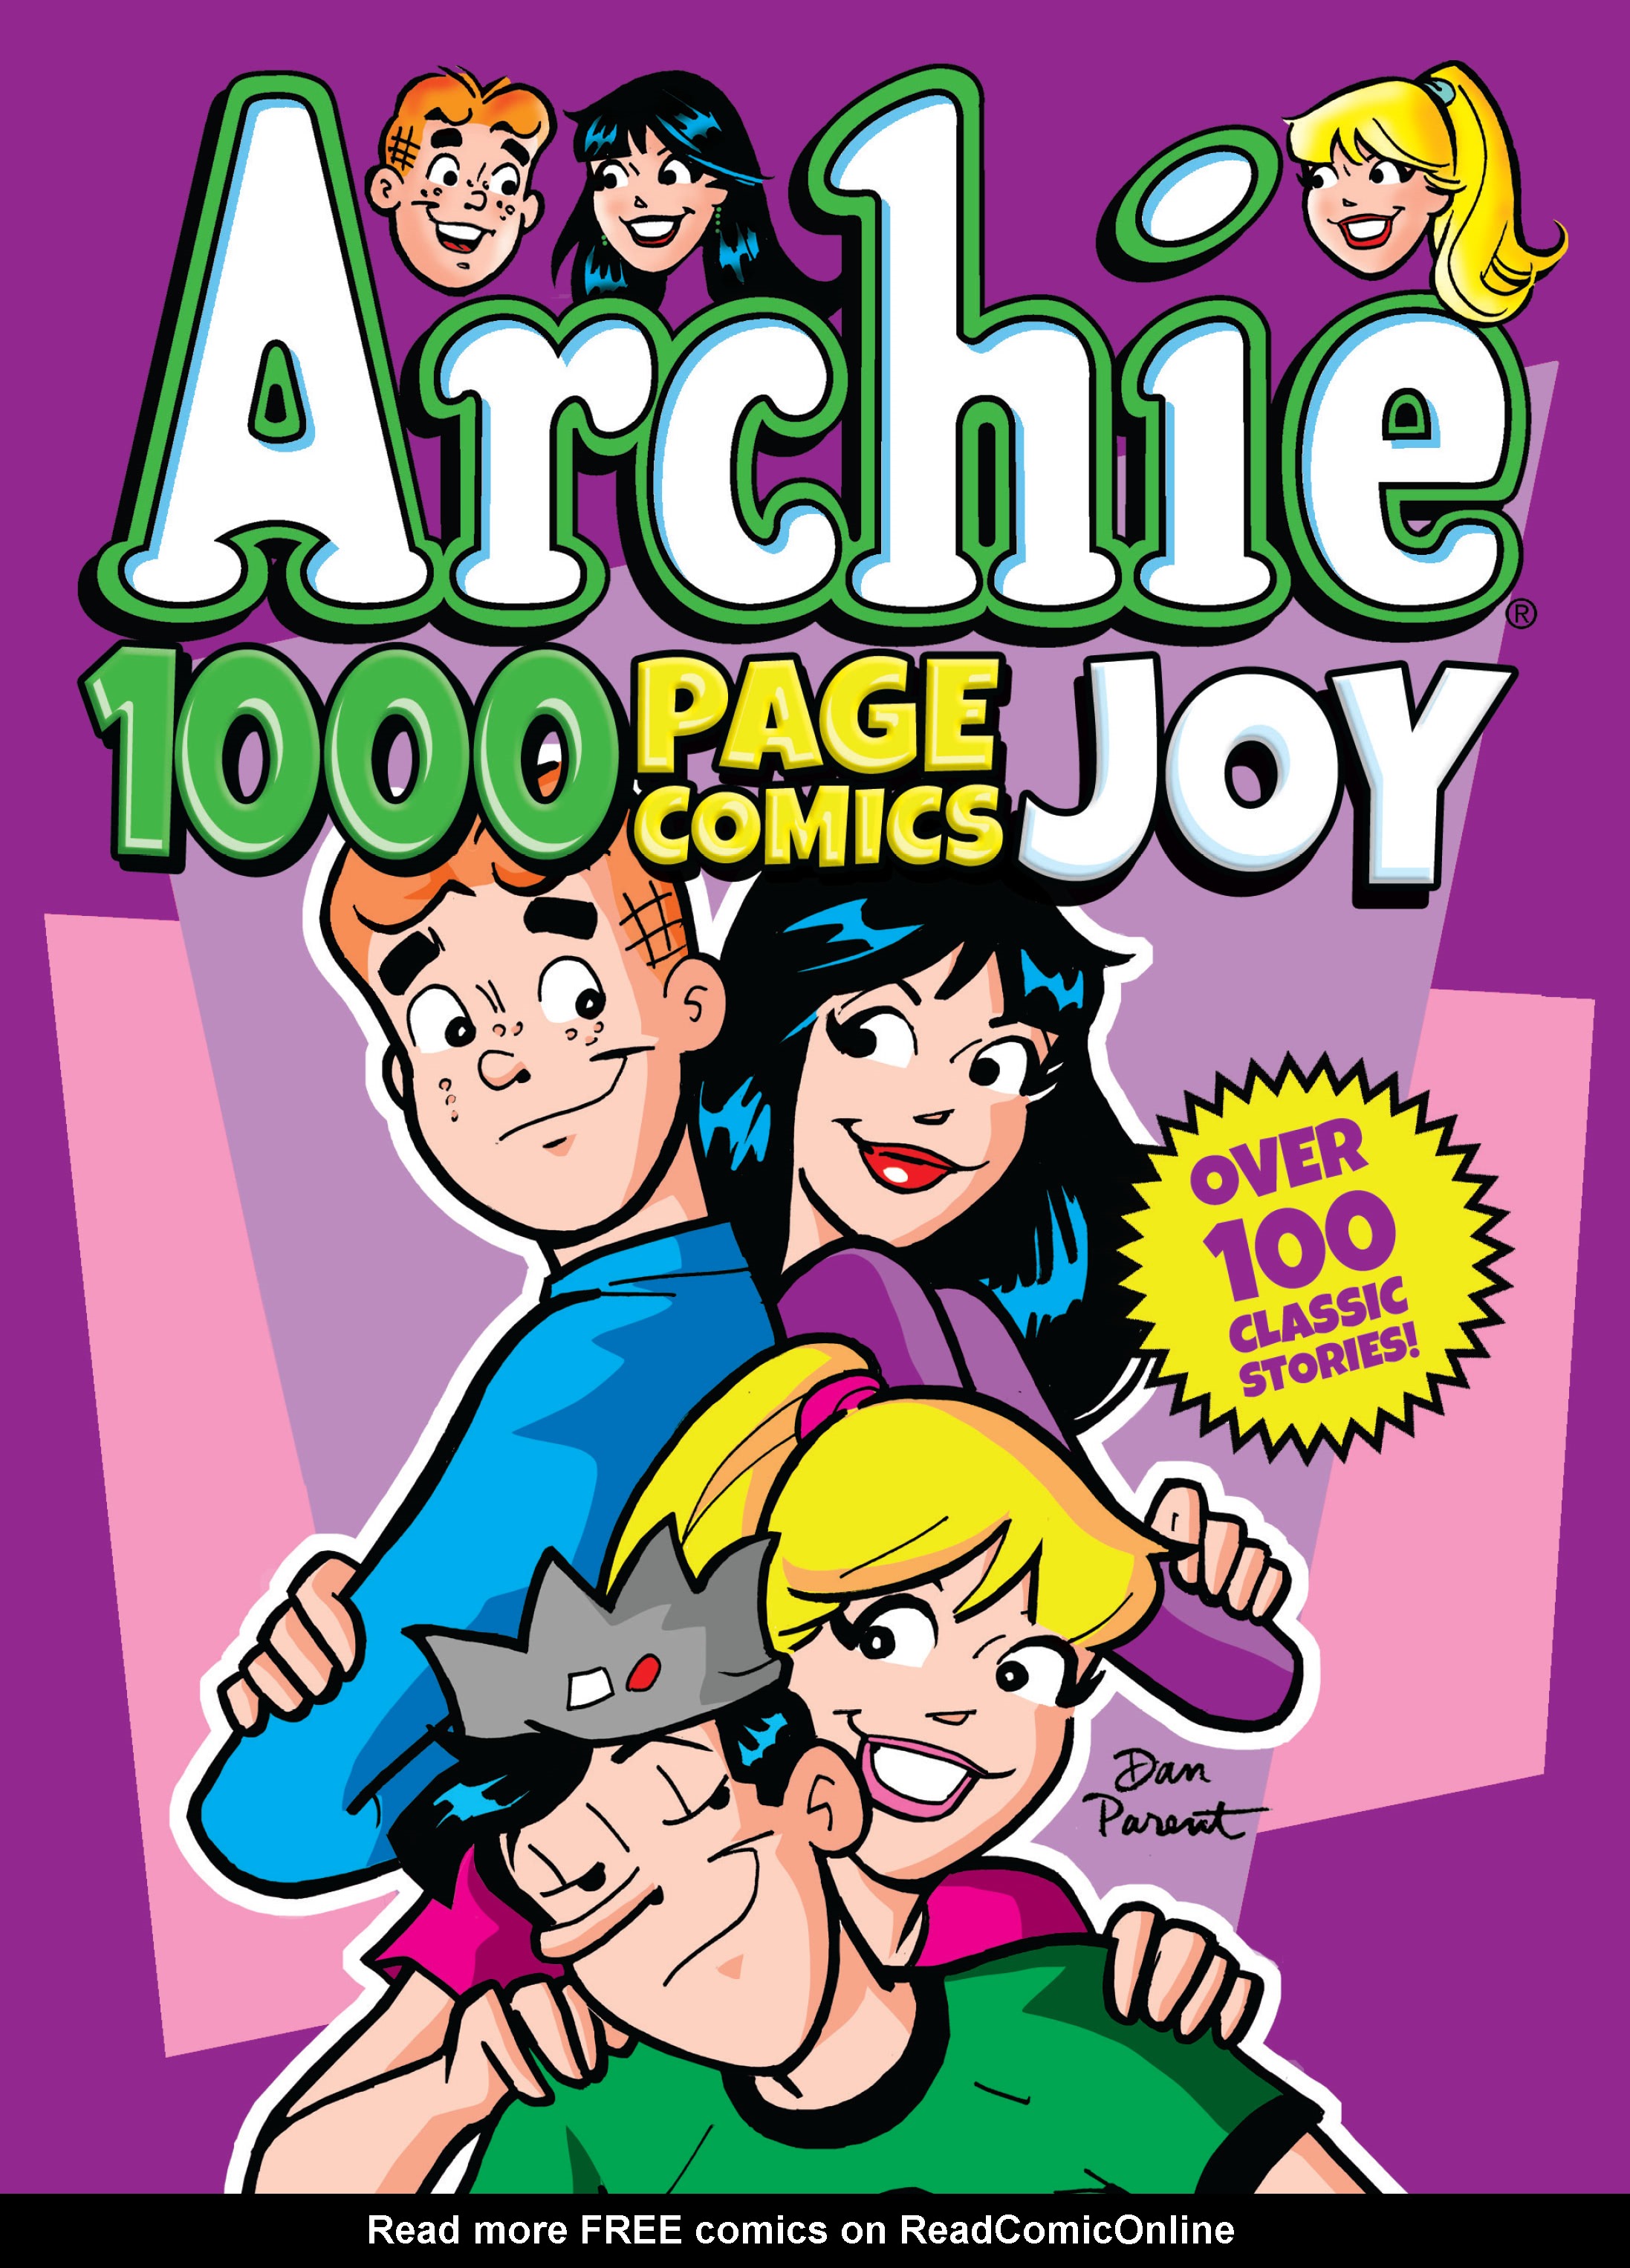 Read online Archie 1000 Page Comics Joy comic -  Issue # TPB (Part 1) - 1